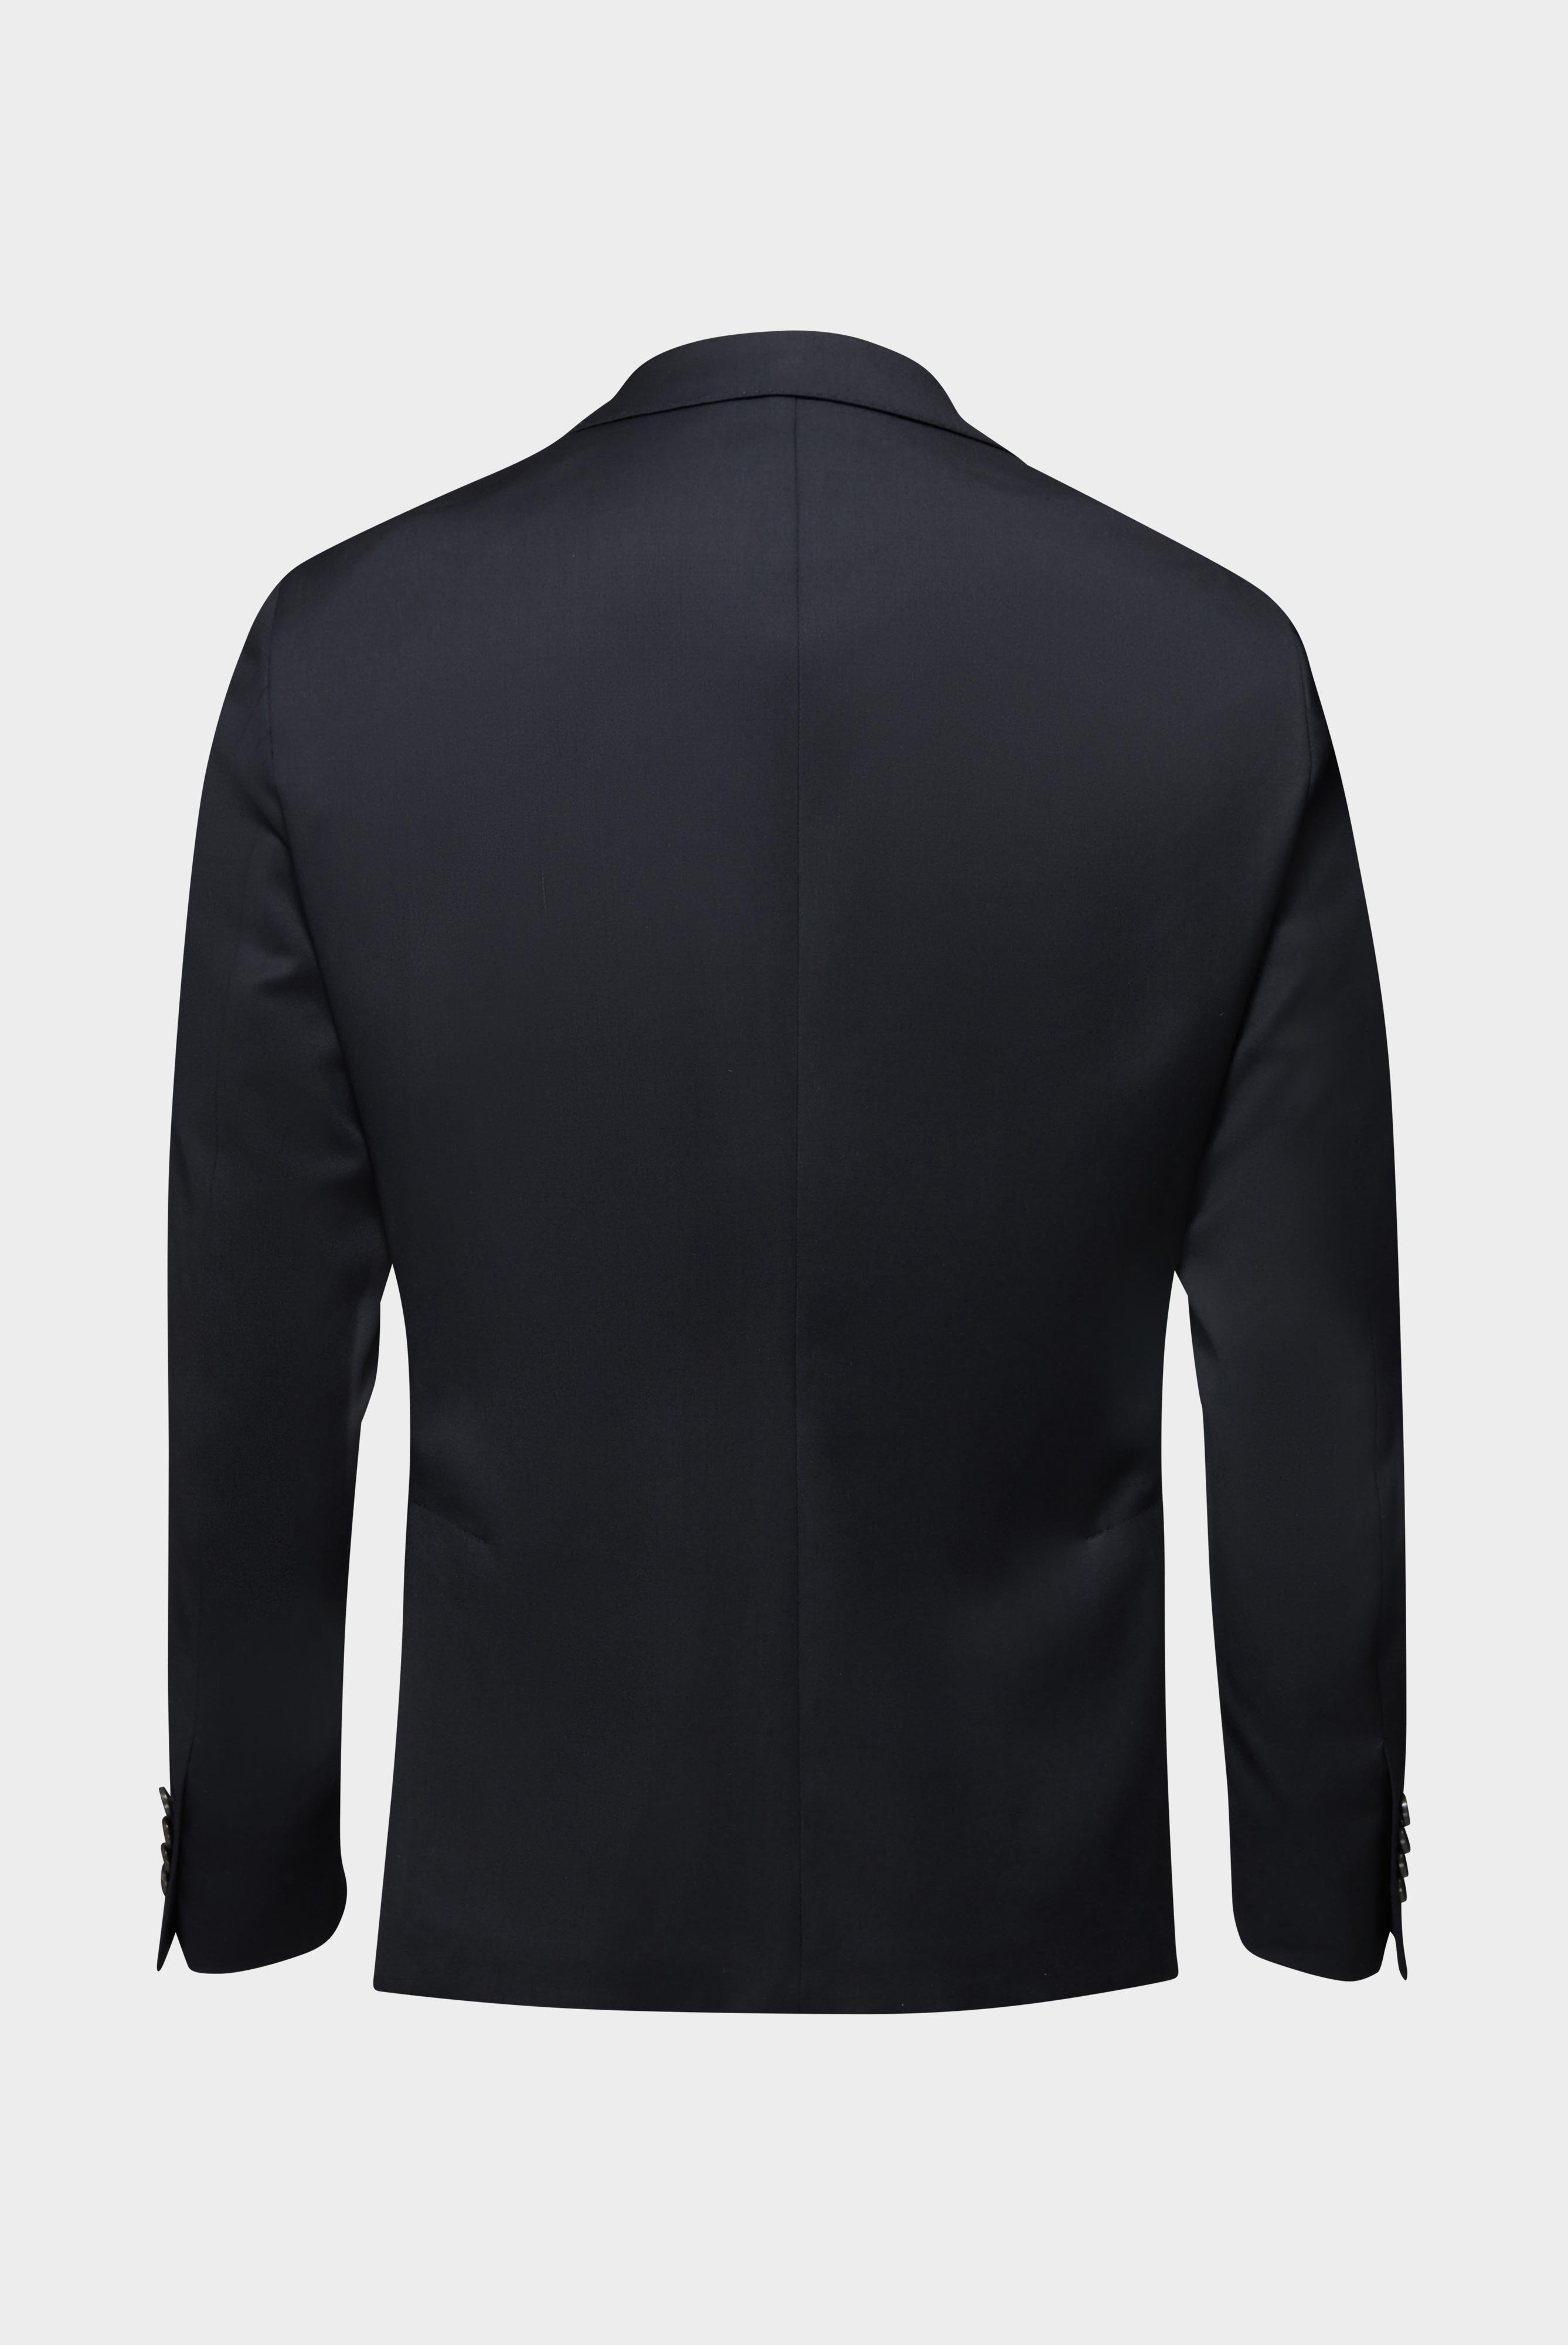 Blazers+Wool Jacket Slim Fit+20.7759..H01010.099.26